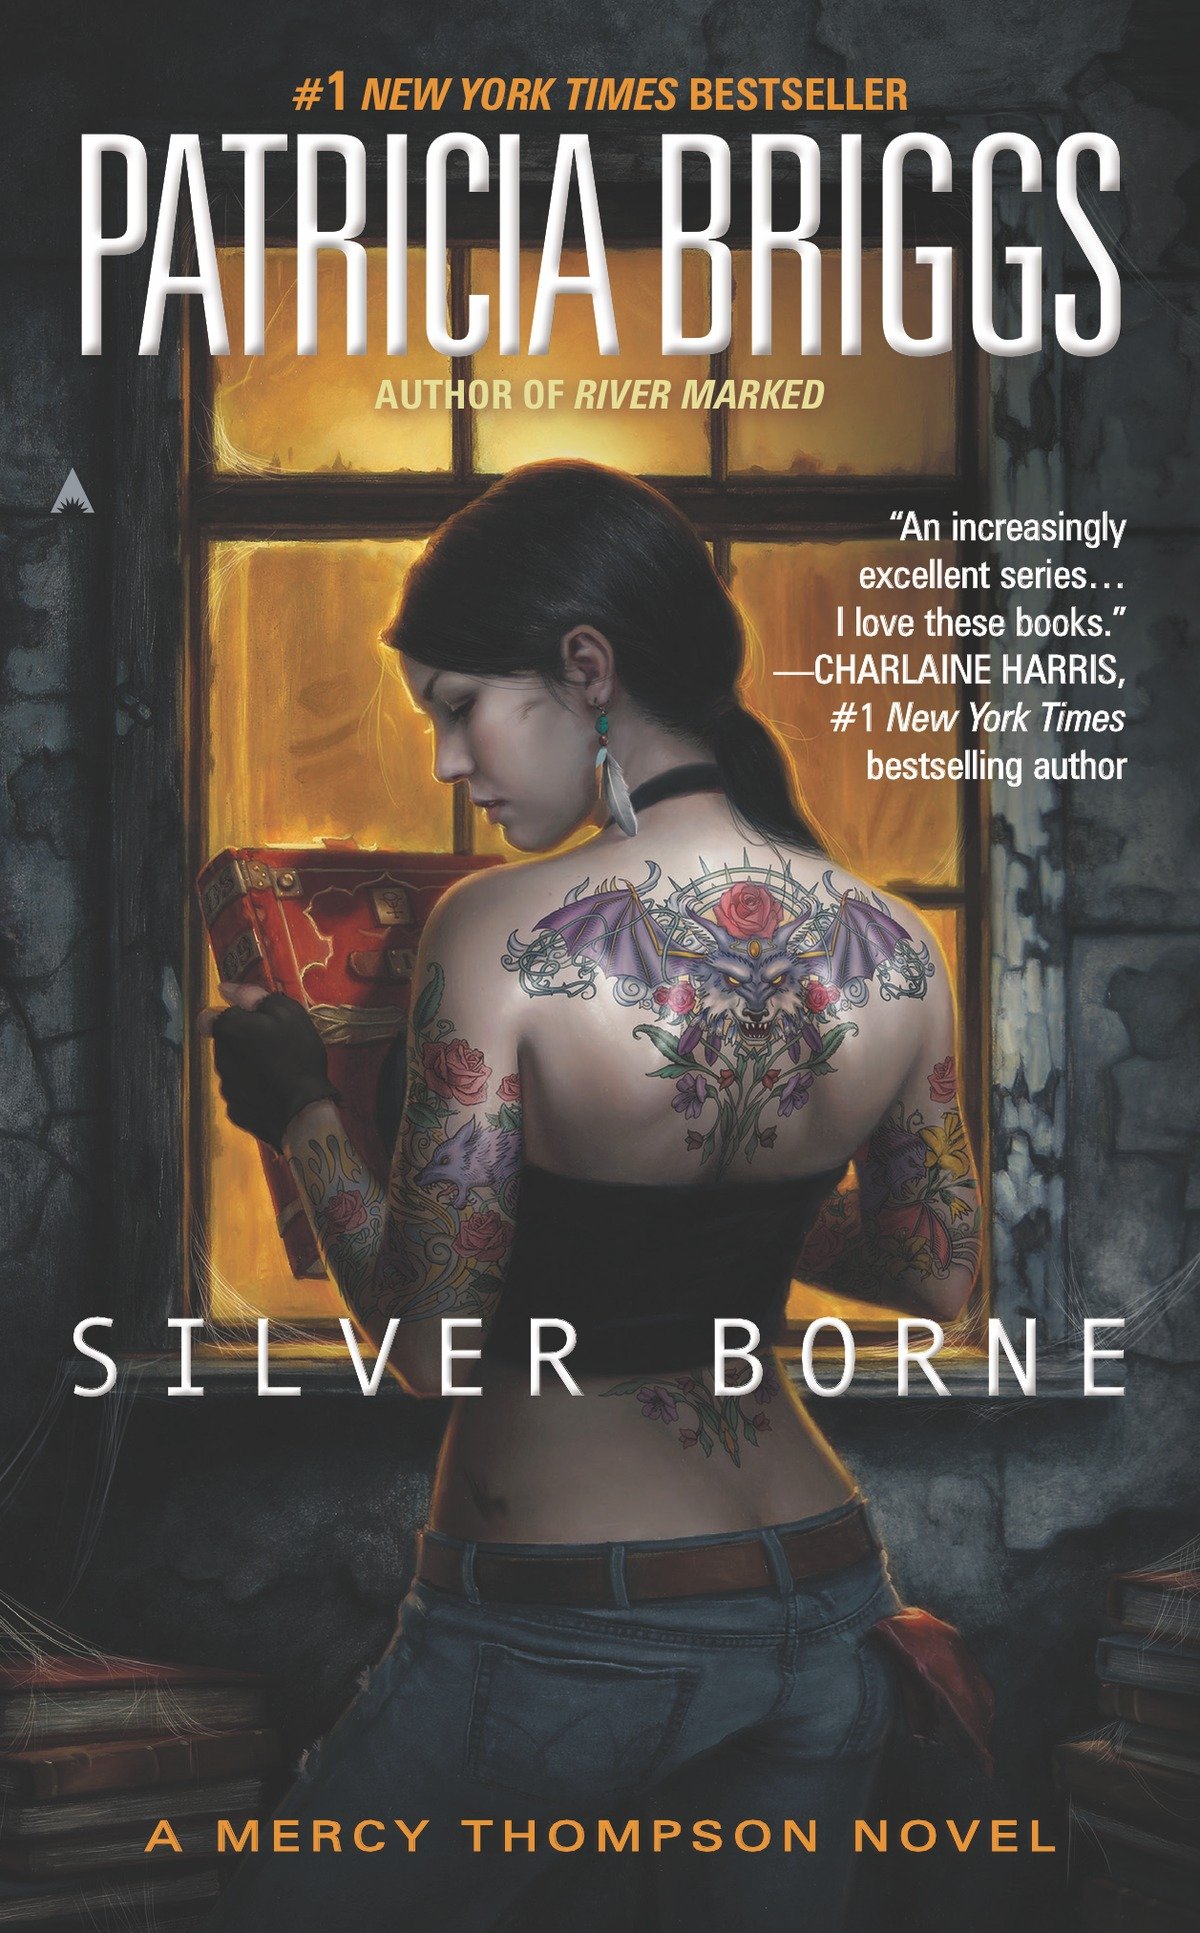 Silver borne cover image